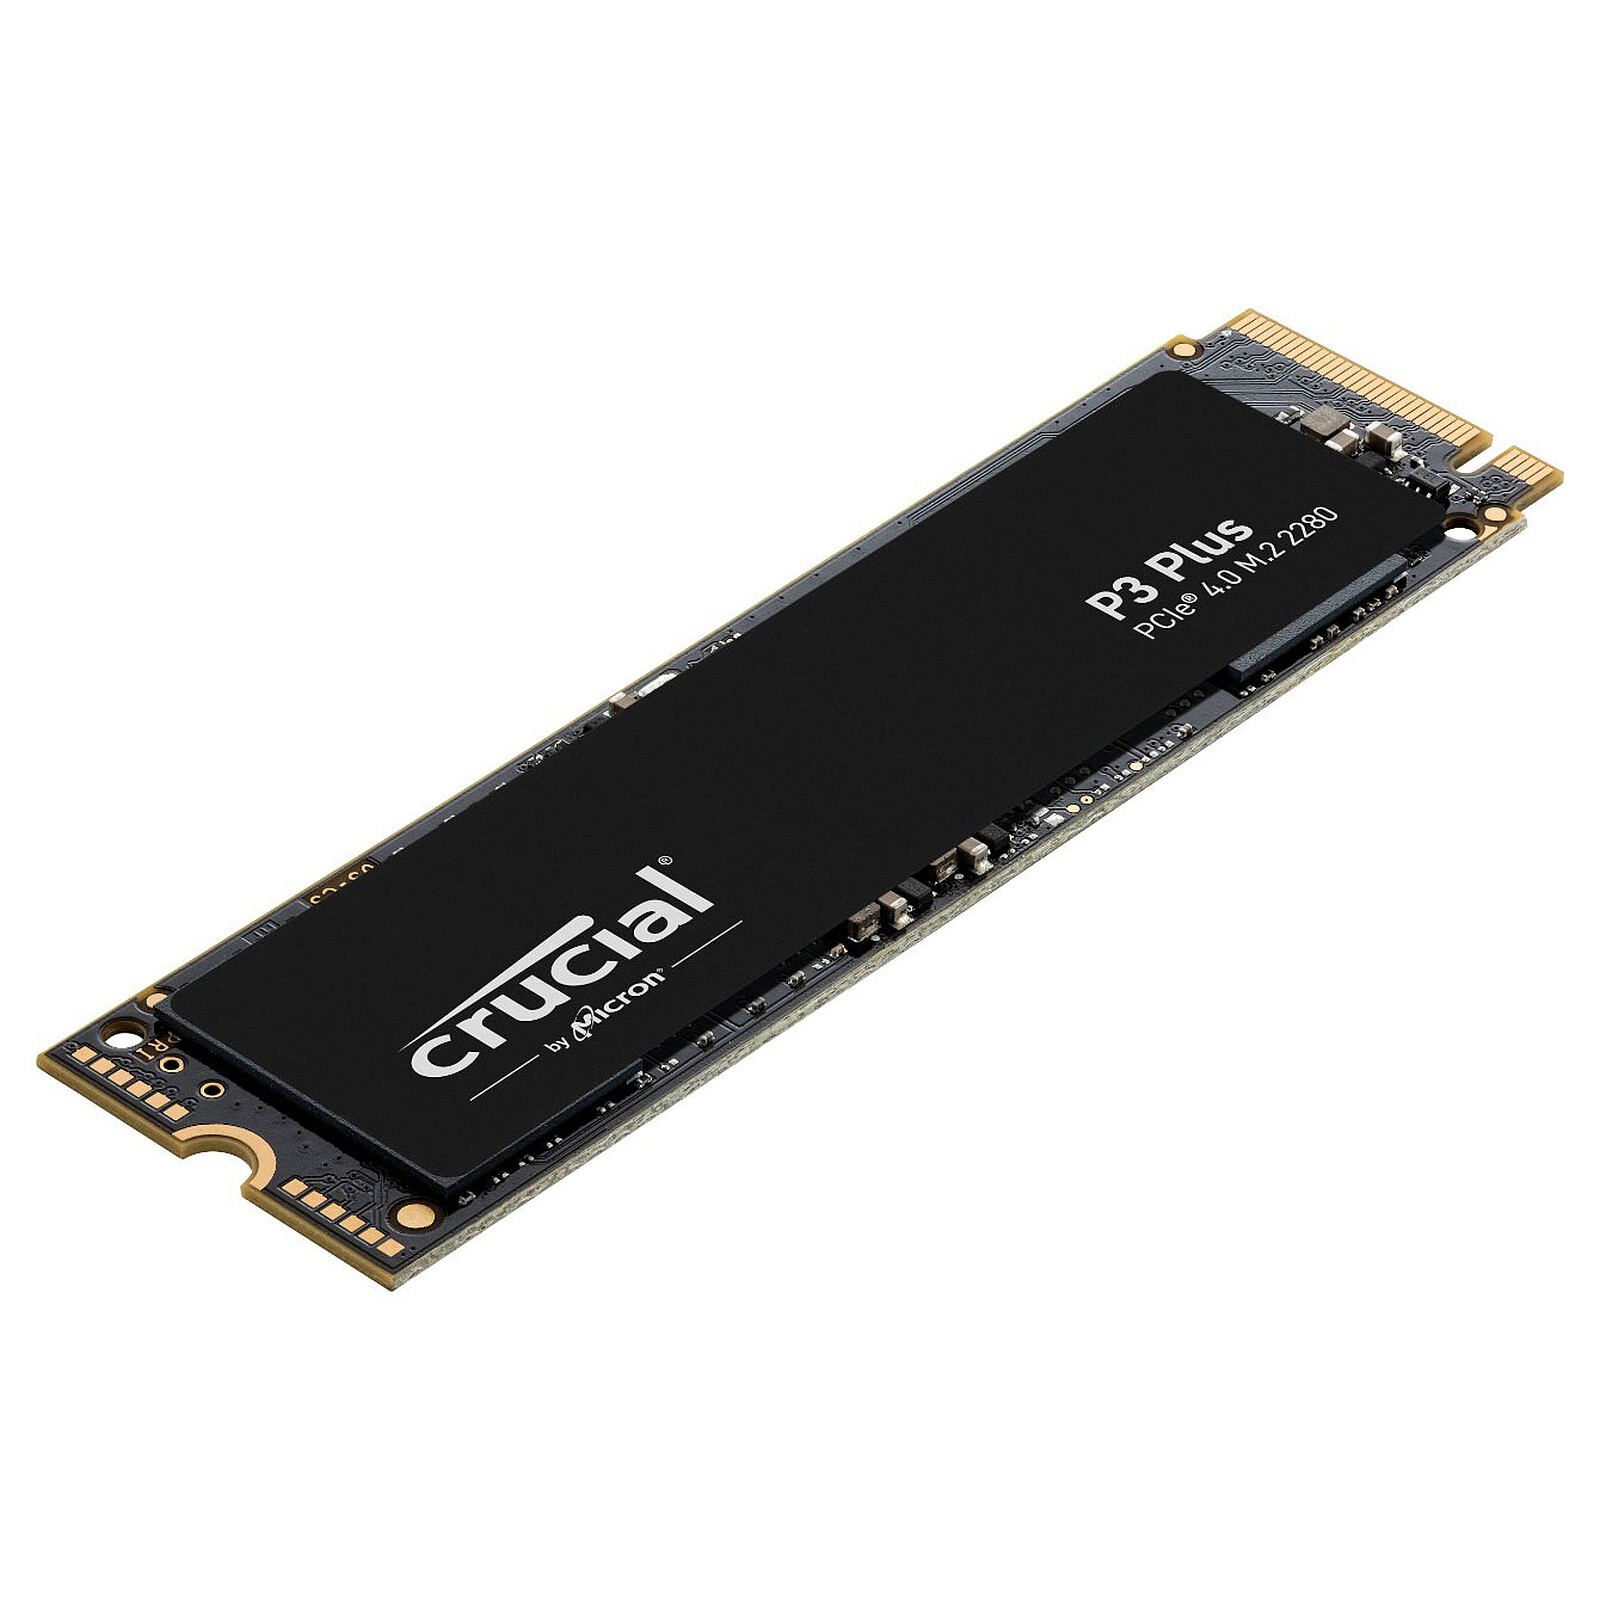 Crucial P3 Plus 1 To, un SSD PCIe 4.0 NVMe pour le grand public